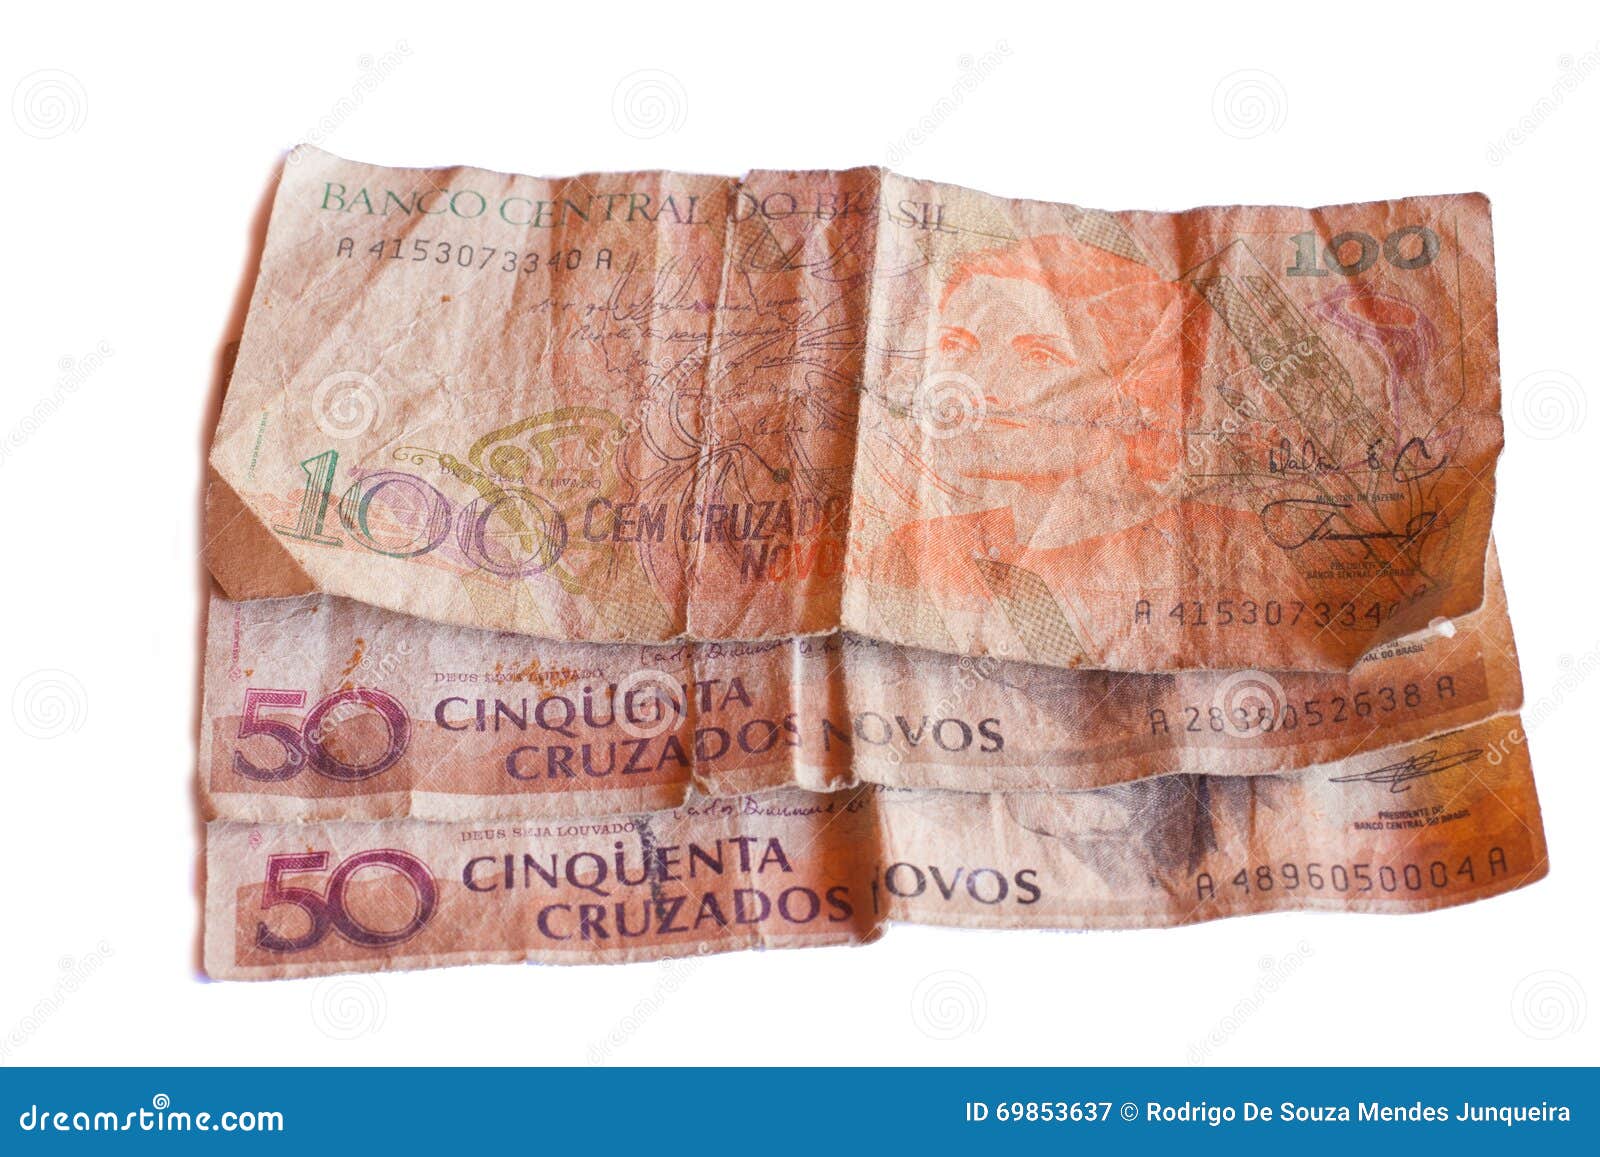 50 brasilian cruzados novos bank note.